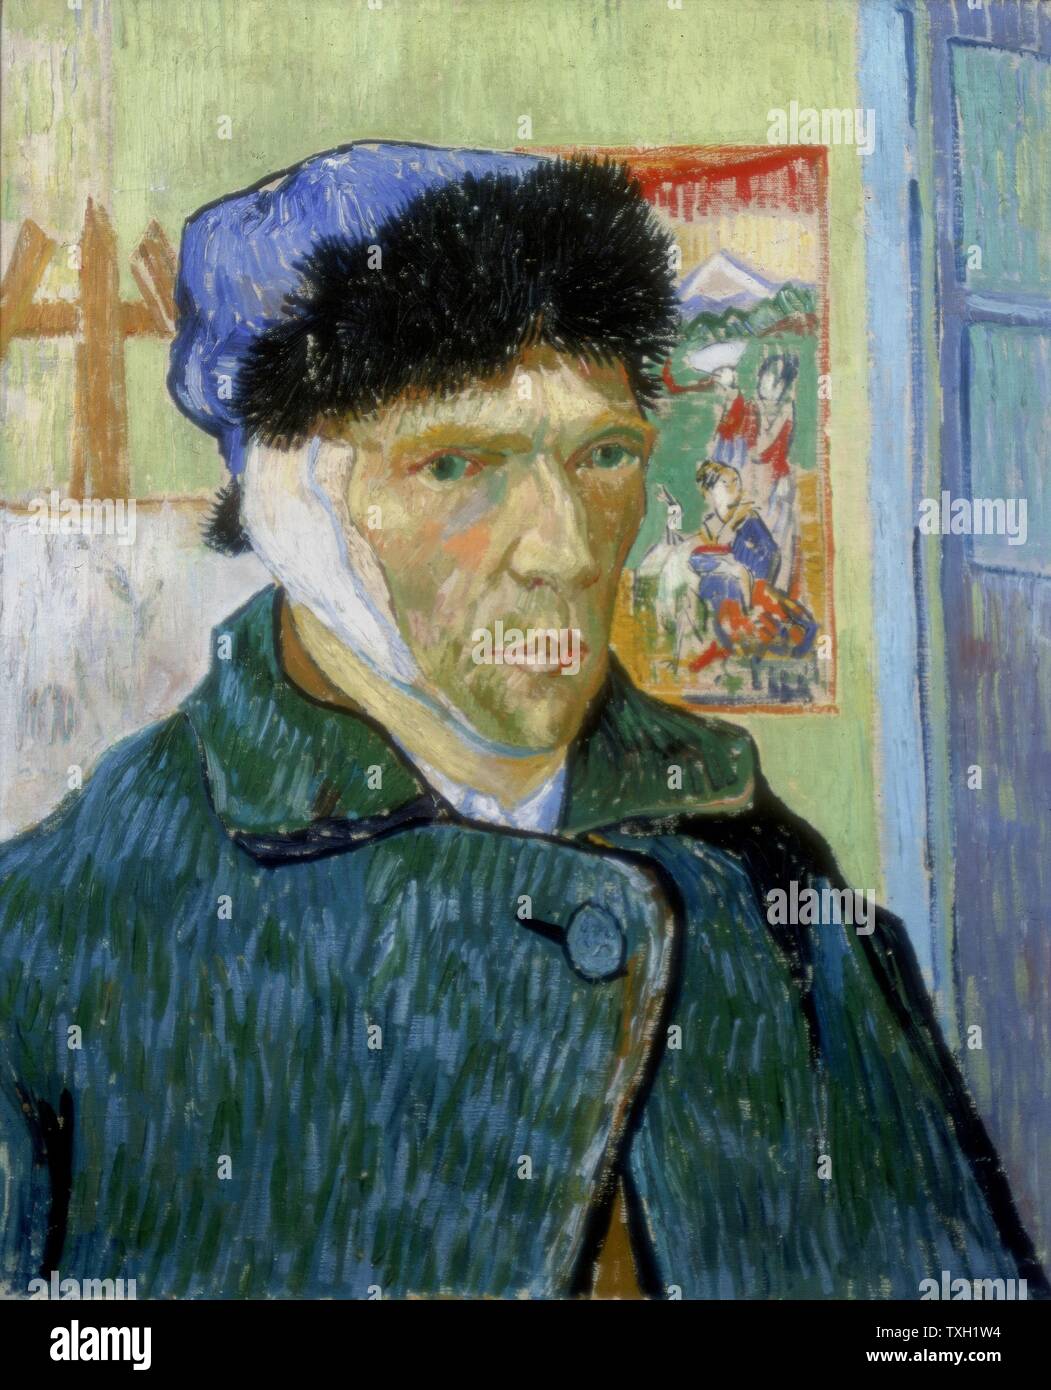 Vincent Van Gogh autoportrait à l'école Néerlandaise avec oreille bandée 1889 Huile sur toile (60 x 49 cm) Londres, Courtauld Institute Galleries Banque D'Images